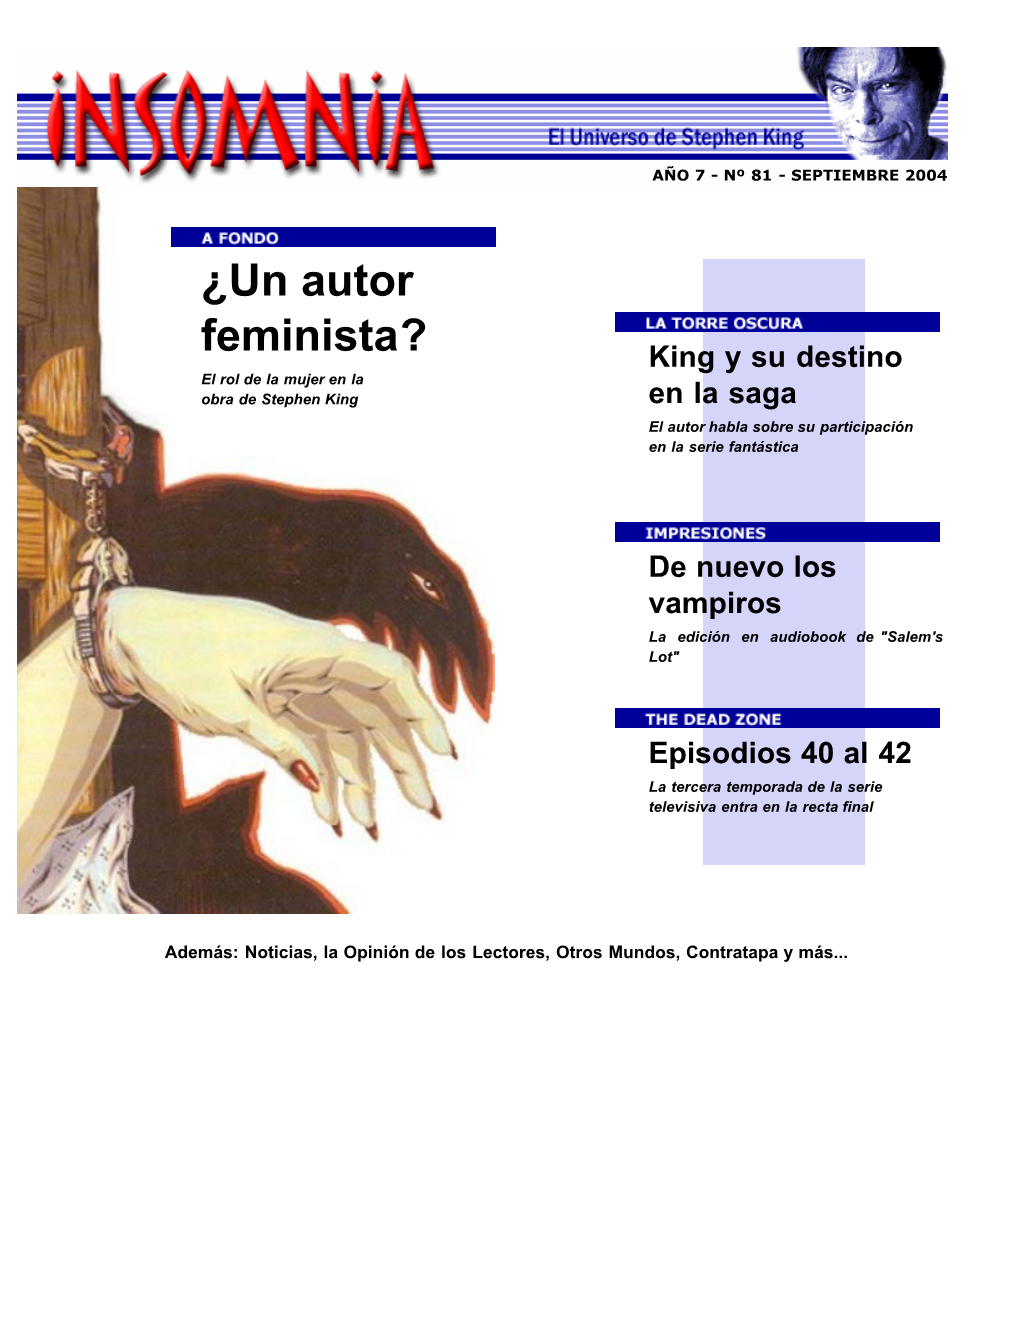 ¿Un Autor Feminista? NOTICIAS El Rol Del Sexo Femenino Impresiones En La Obra De Stephen King OTROS MUNDOS